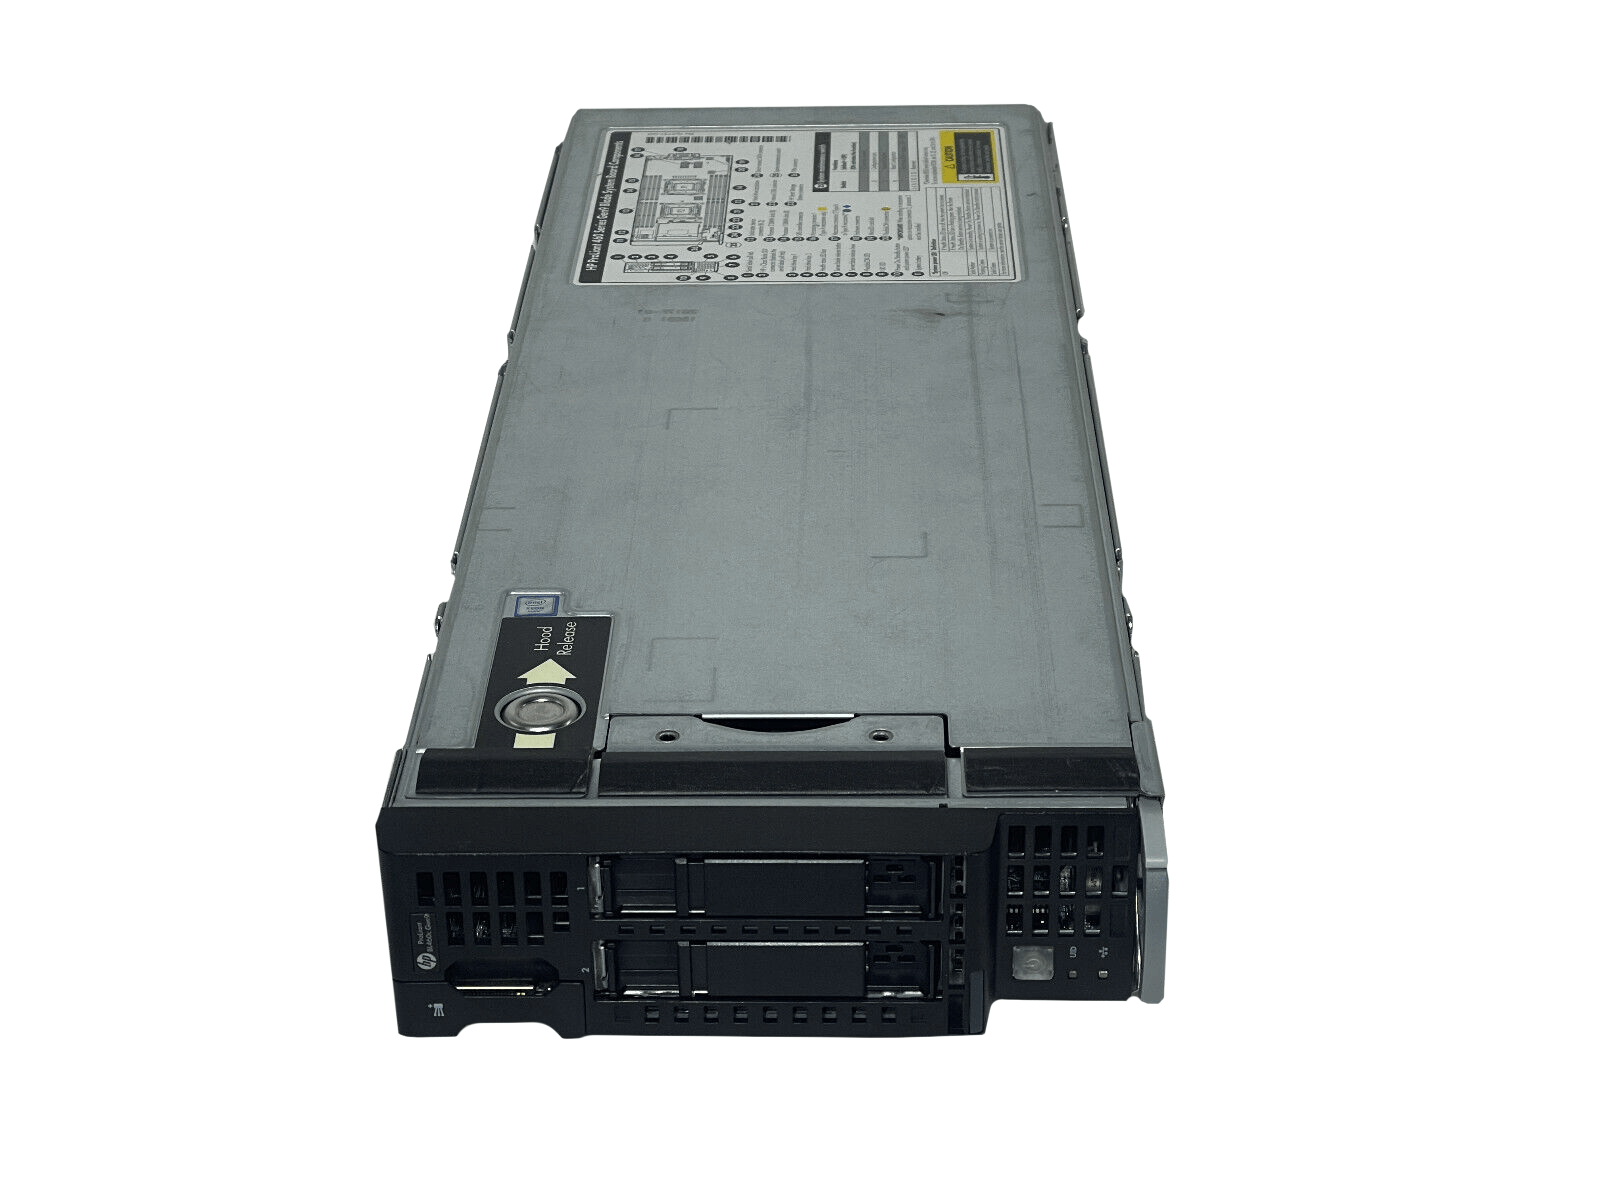 HPE BL460c Gen9 Blade Server 2SFF 2x 12C E5-2670 v3 256GB P244br 630FLB 10GbE.